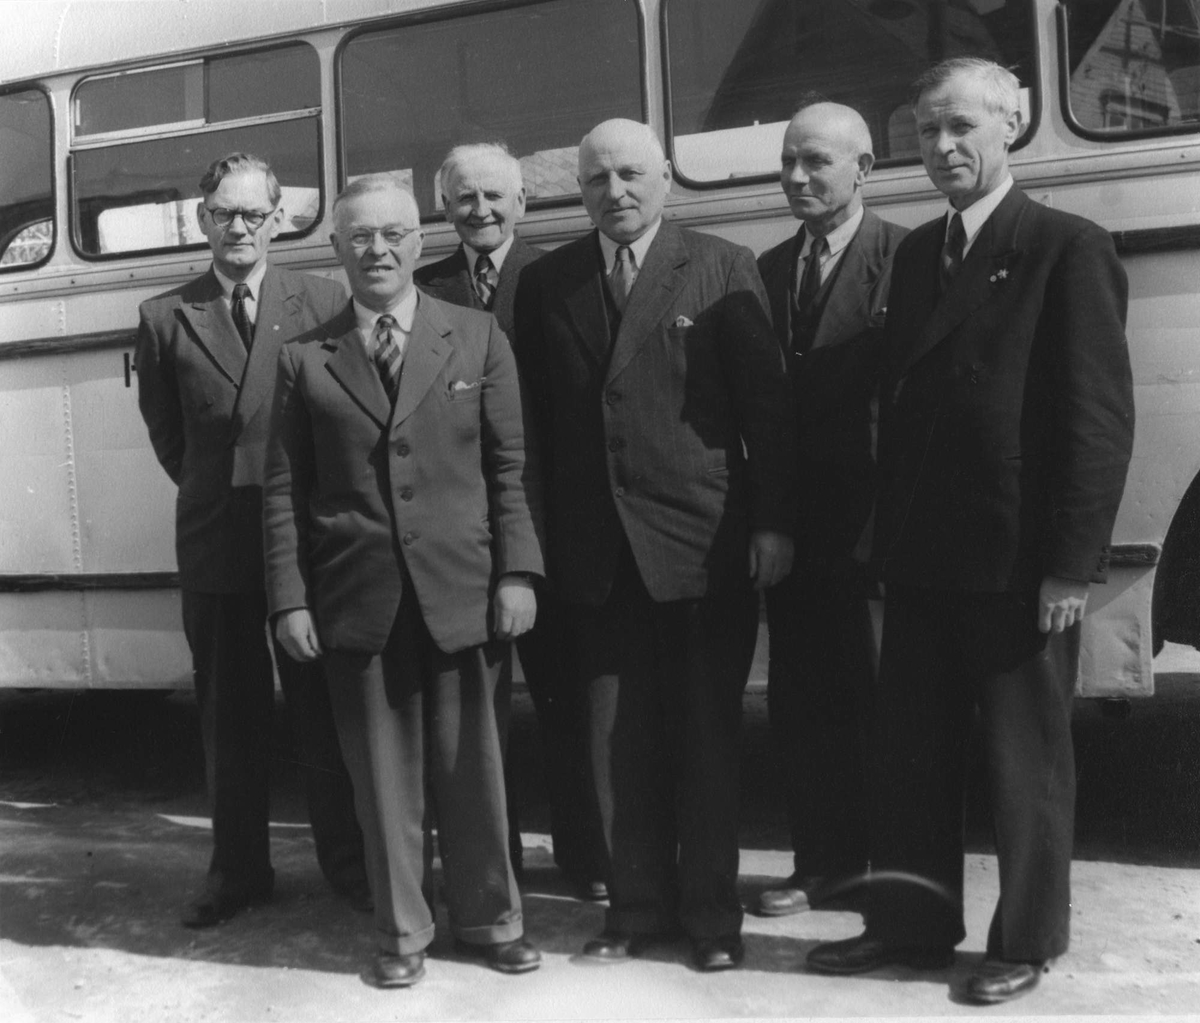 Gruppebilde av styret i HORB, fotografert foran en buss.